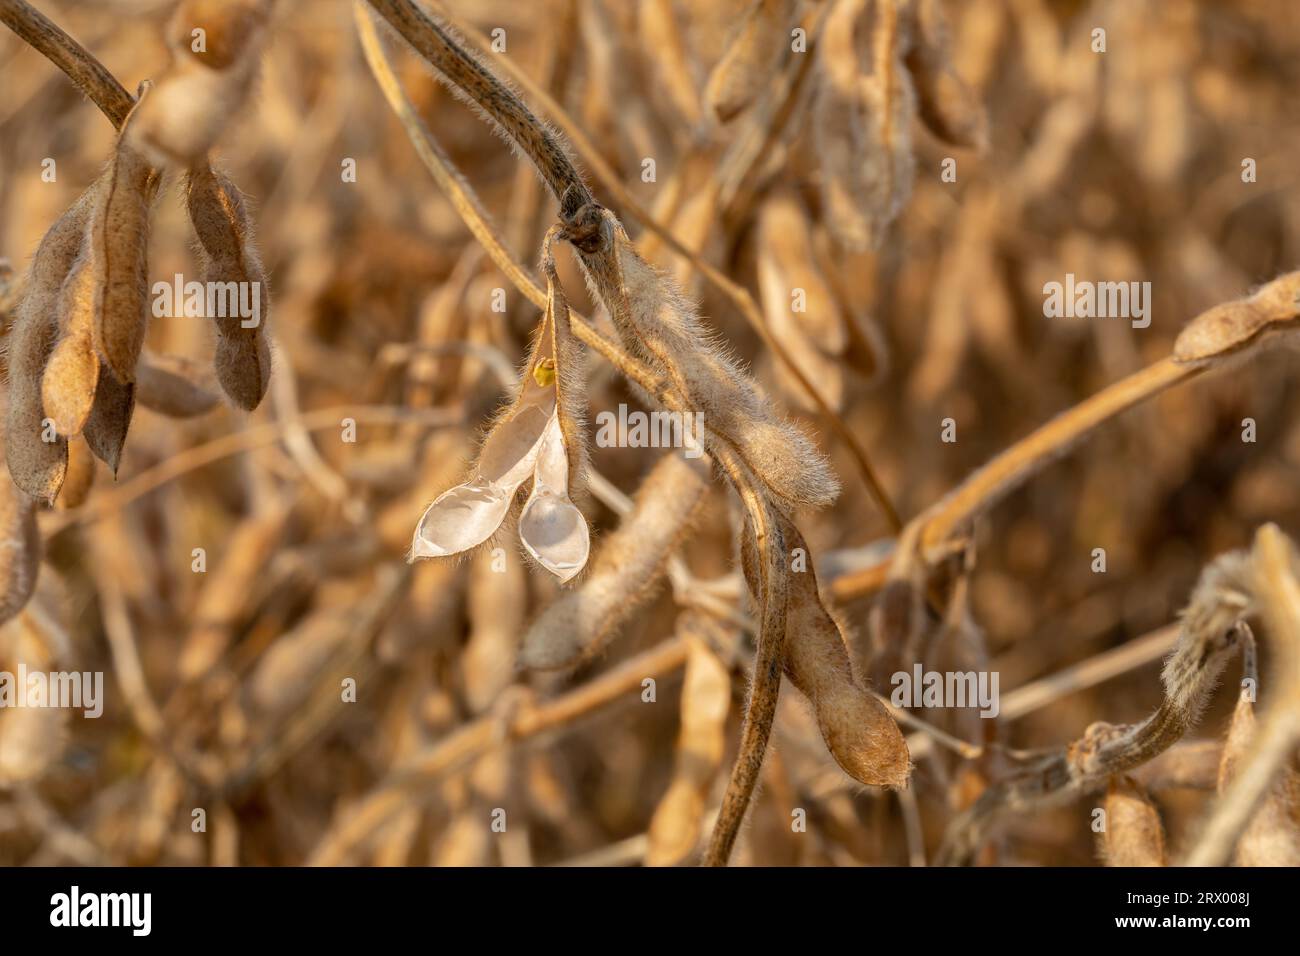 la gousse de soja se brise avec des semences dans le champ pendant la récolte. Concept de stress de sécheresse, de teneur en humidité et de perte de rendement Banque D'Images